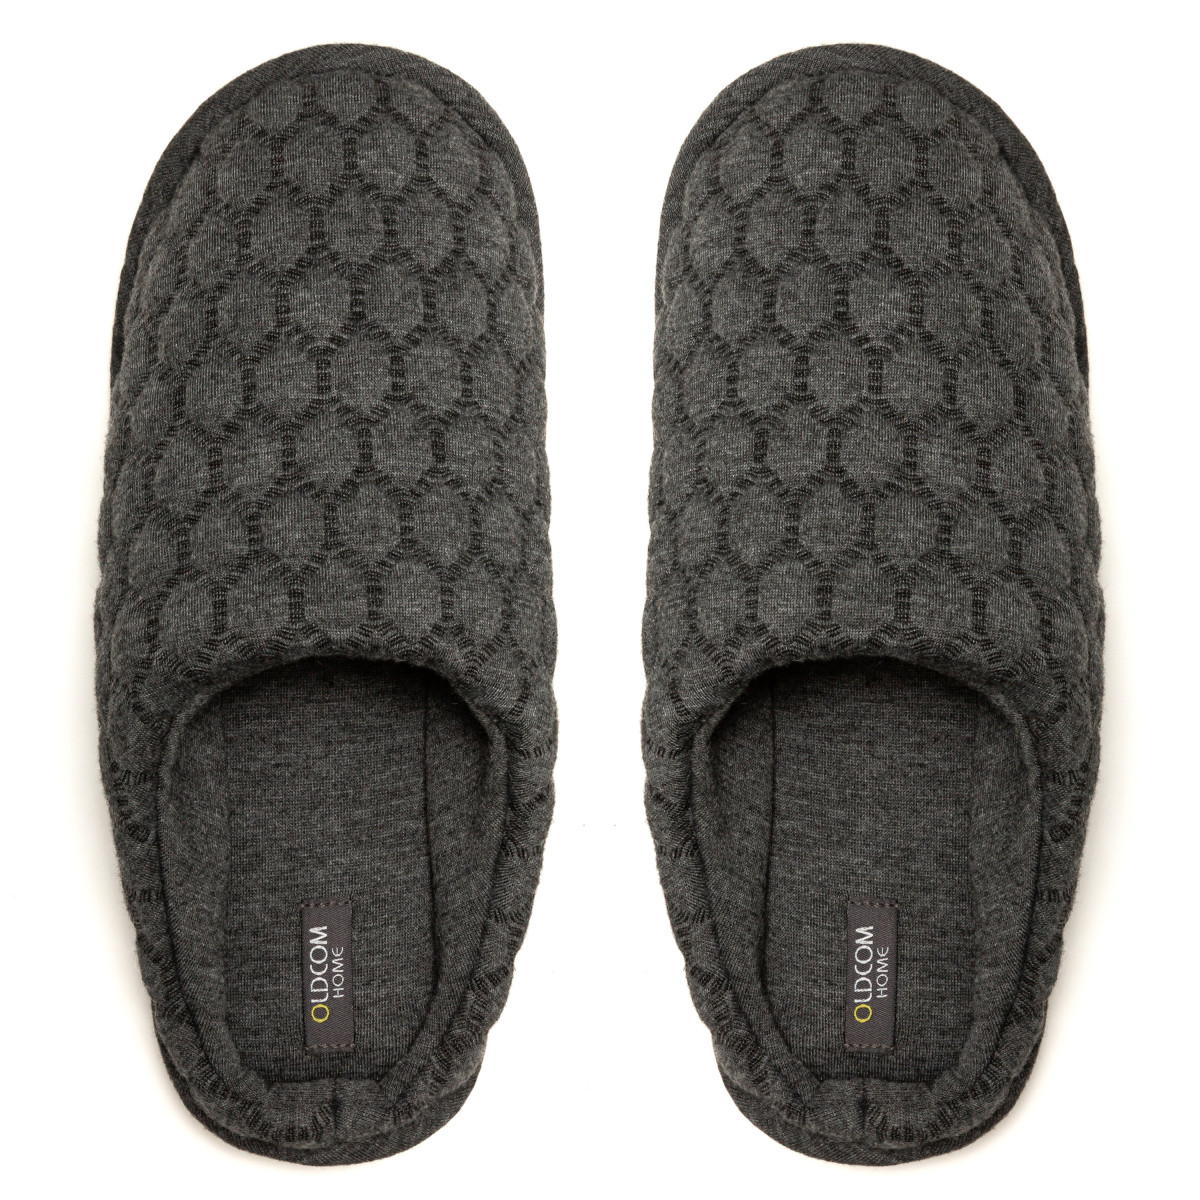 Women's Home slippers FAMILY, Gray